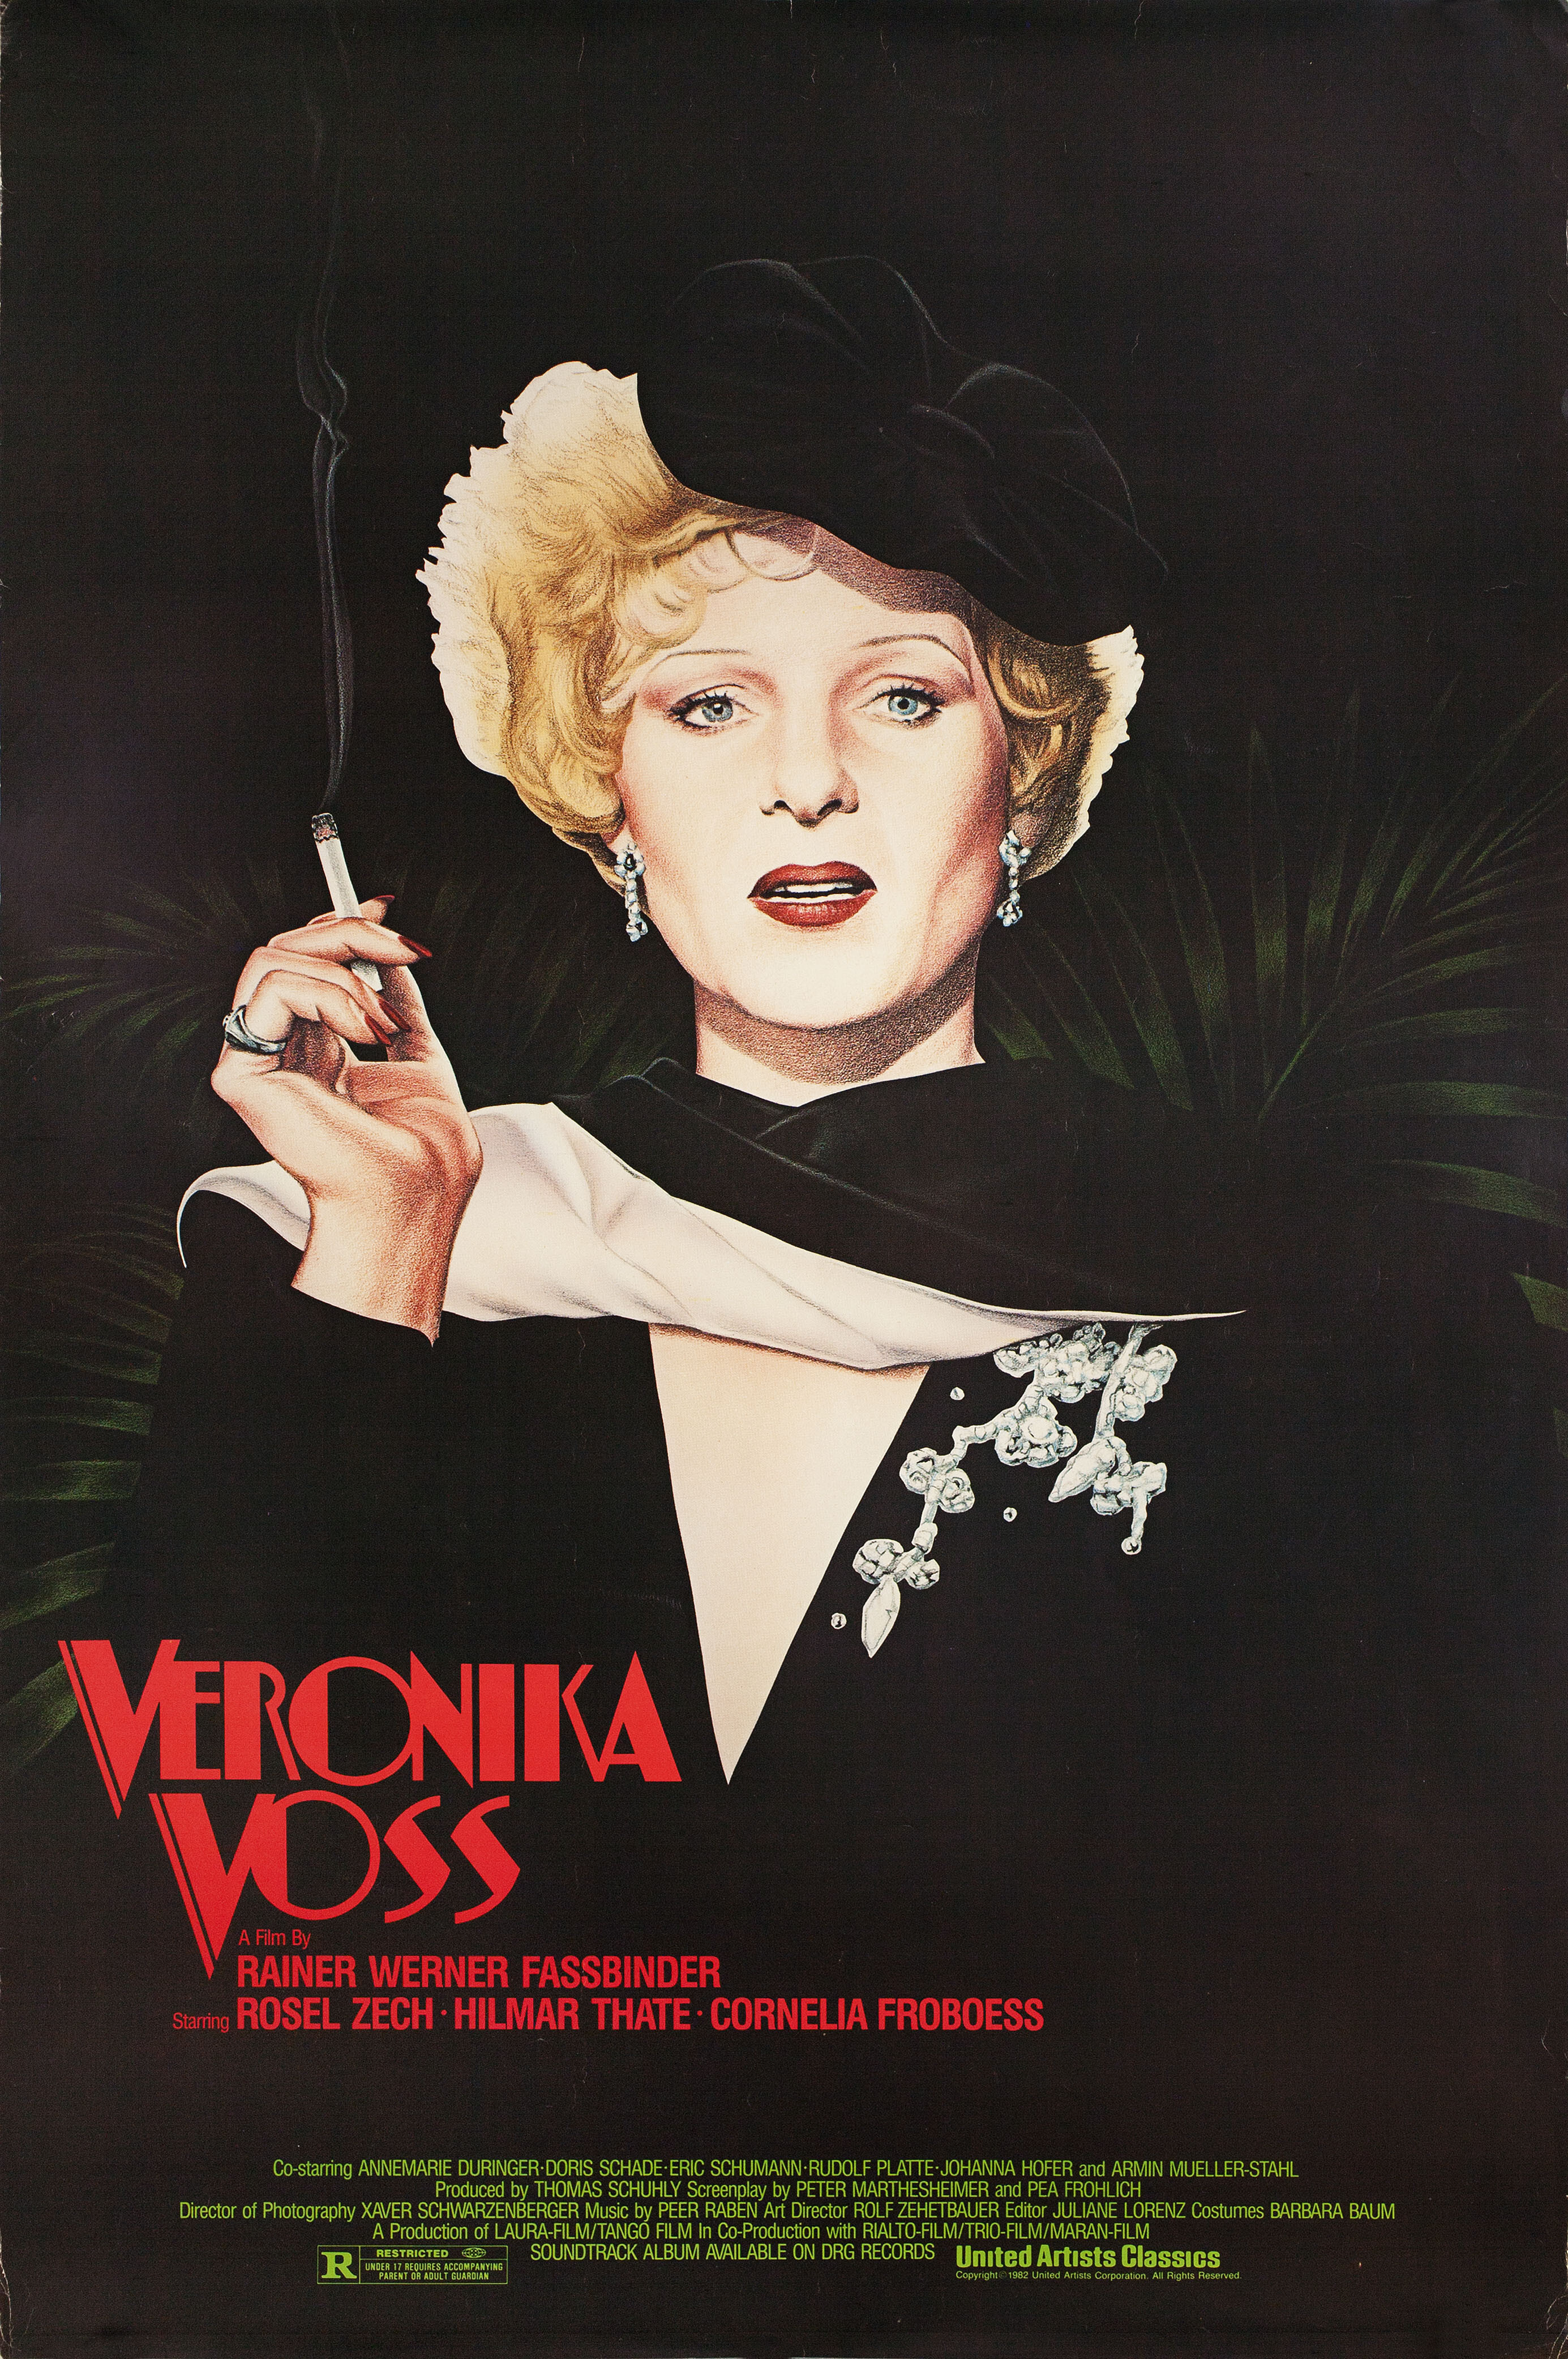 Тоска Вероники Фосс (Veronika Voss, 1982), режиссёр Райнер Вернер Фассбиндер, иллюстрированный постер к фильму (США, 1982 год)